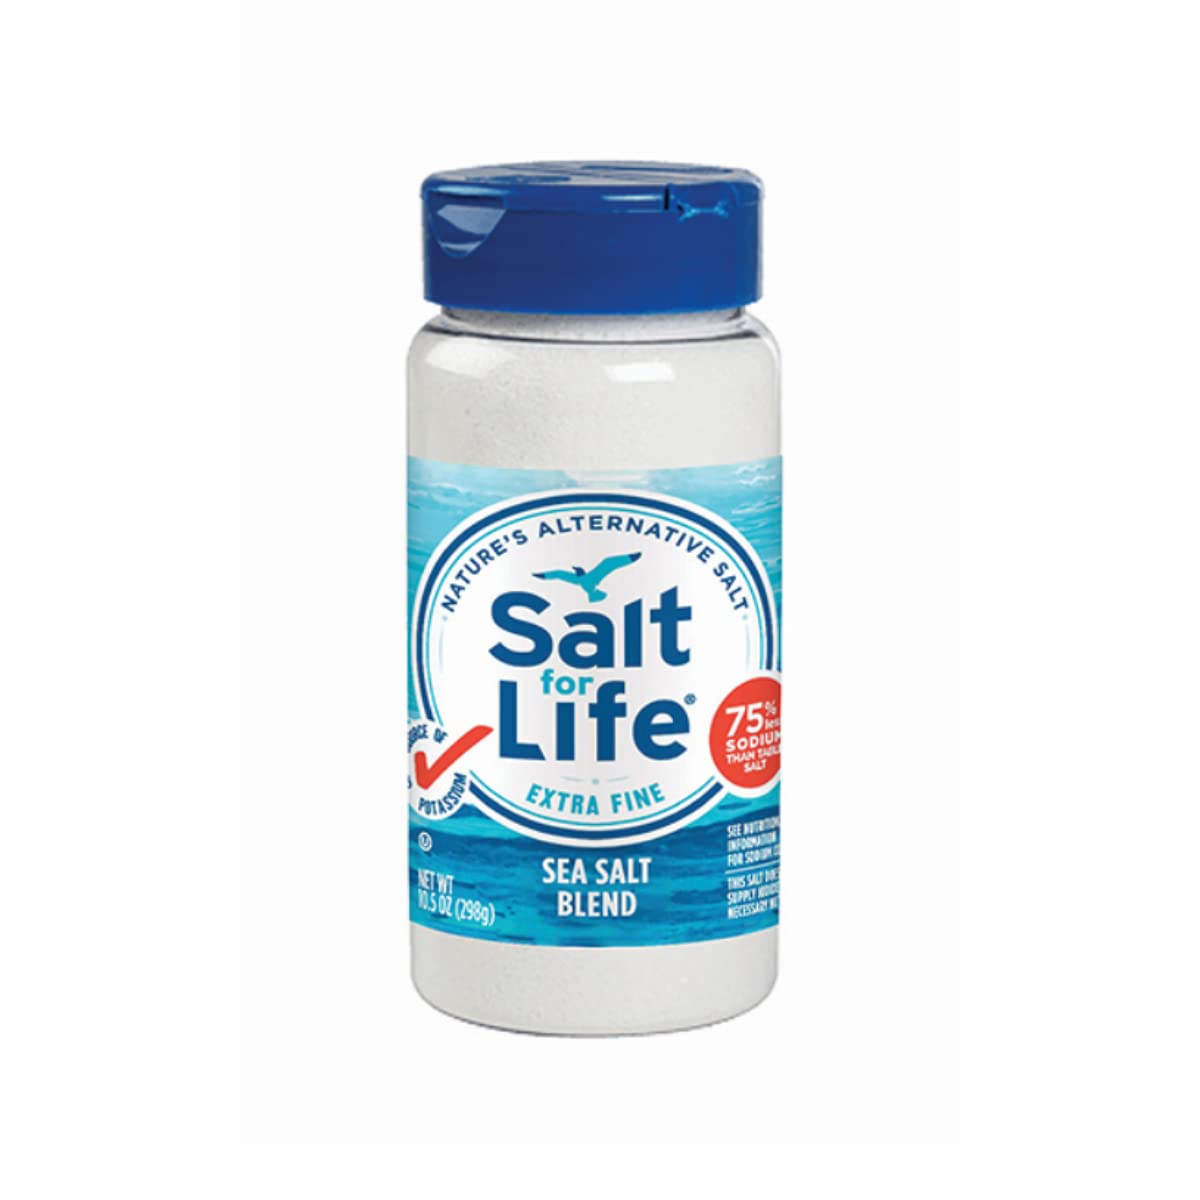 Salt Substitutes: Potassium is the new sodium